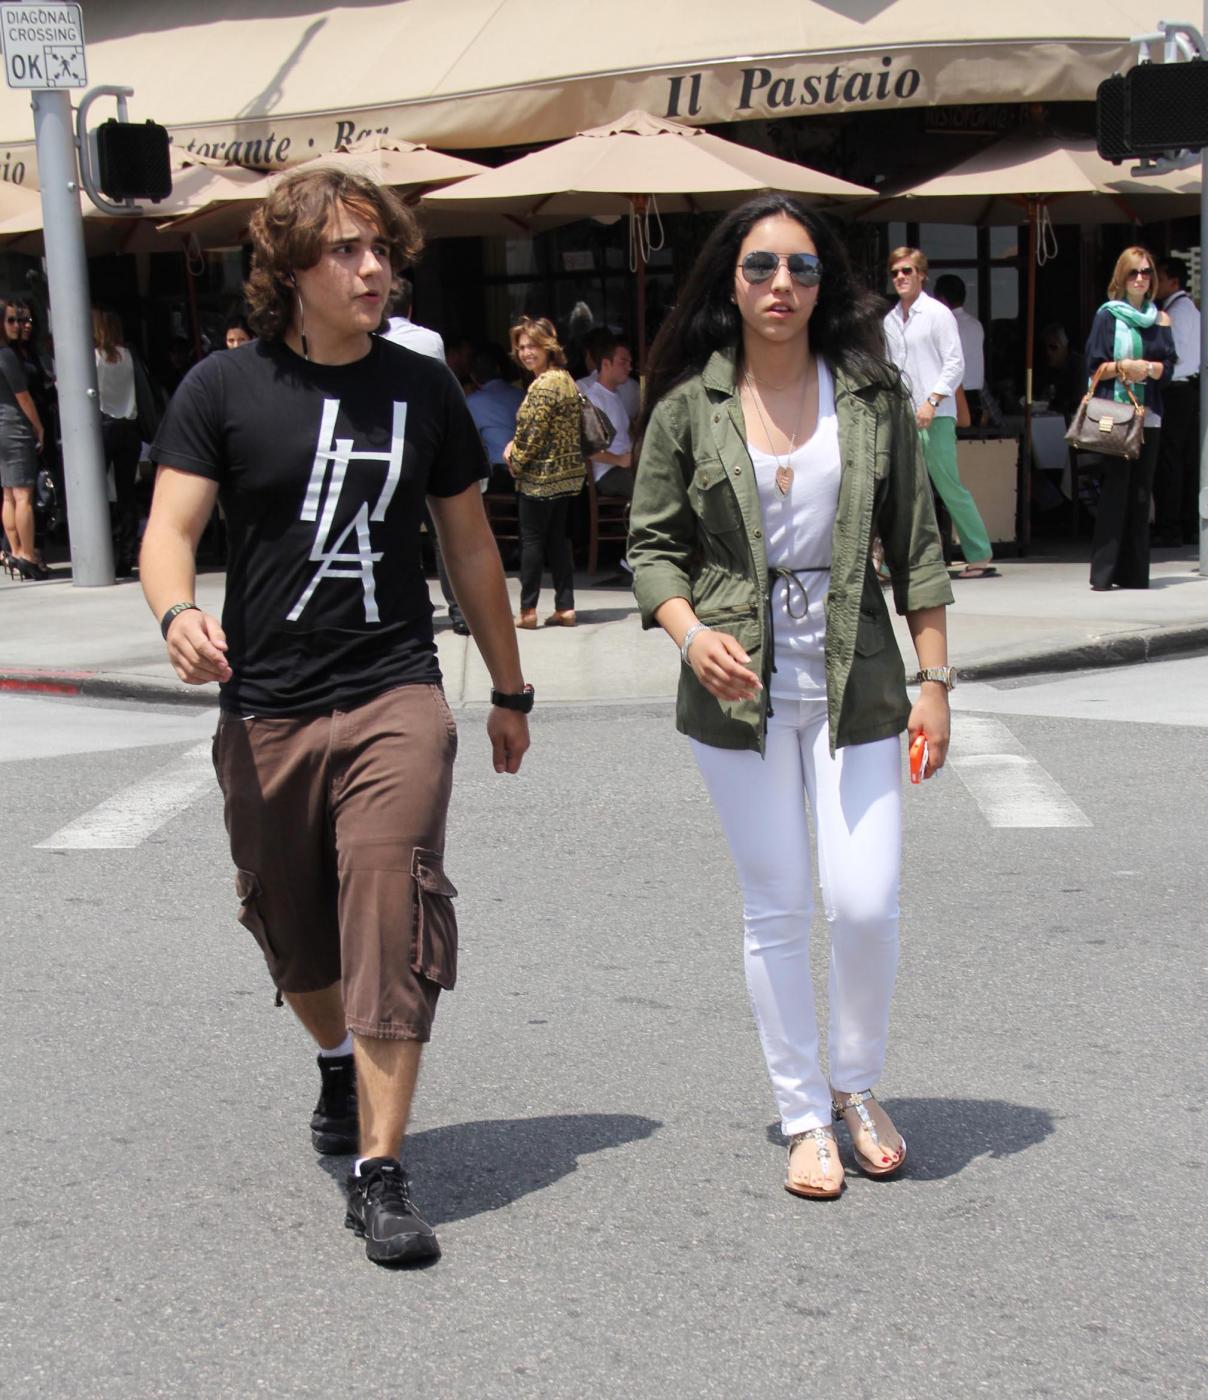 Prince Michael Jackson a pranzo con la fidanzata Remi Alfalah02